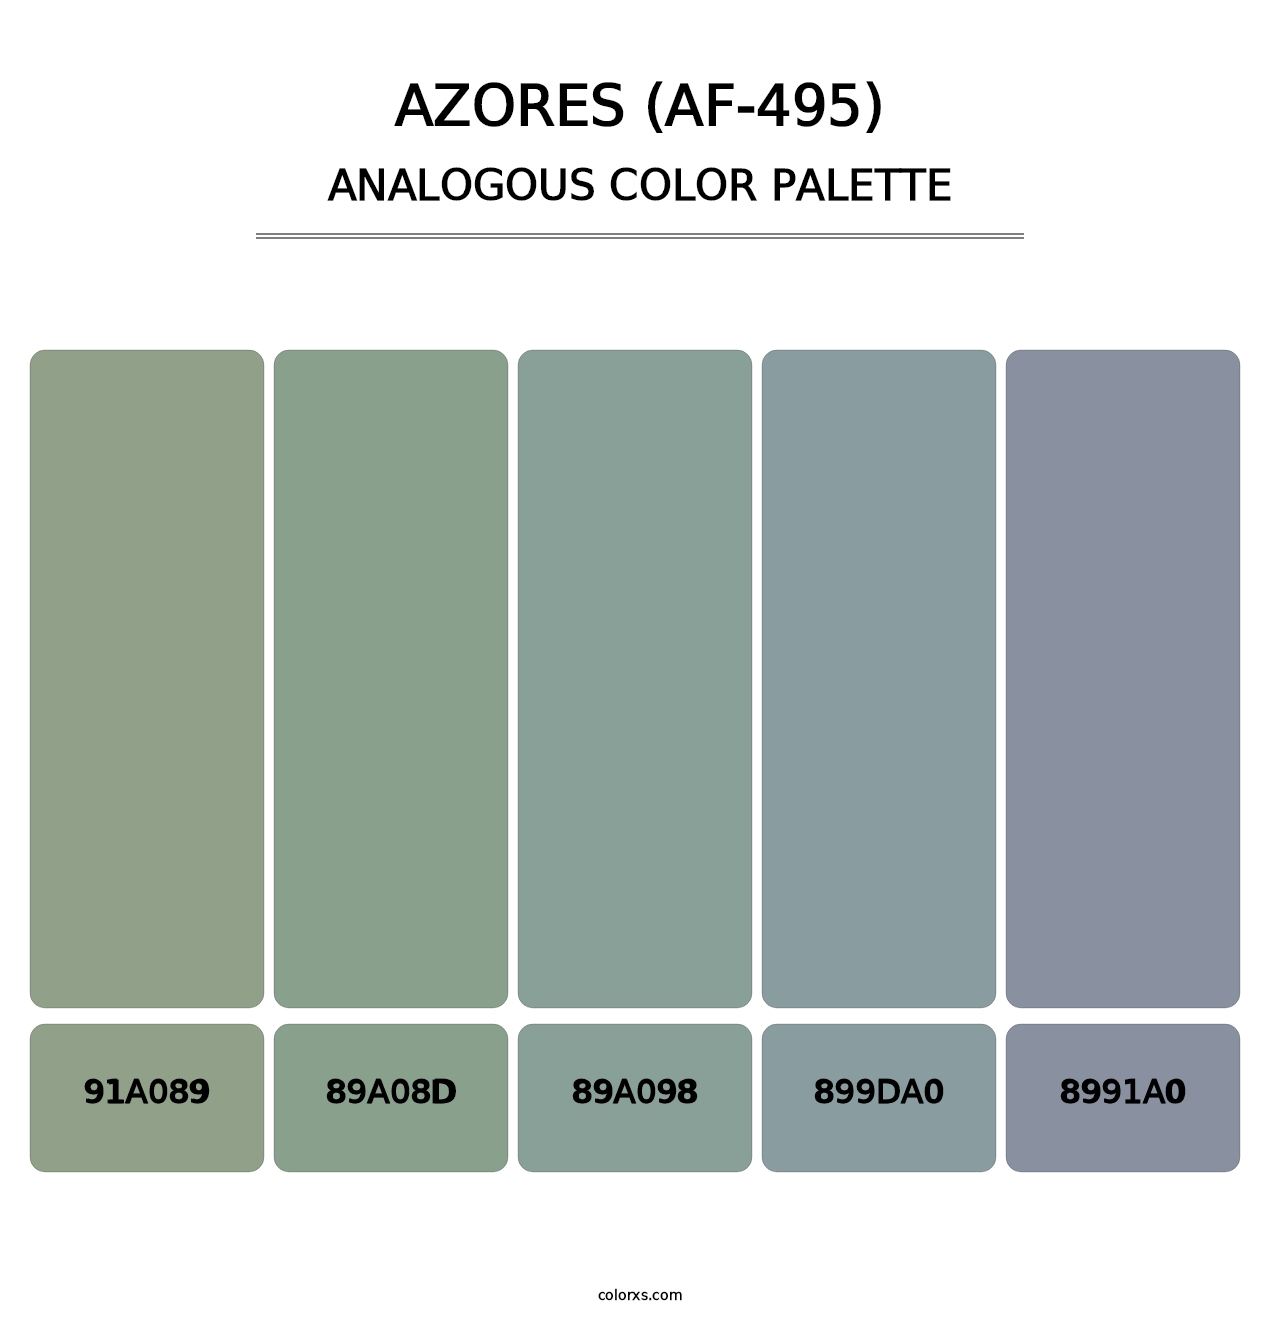 Azores (AF-495) - Analogous Color Palette